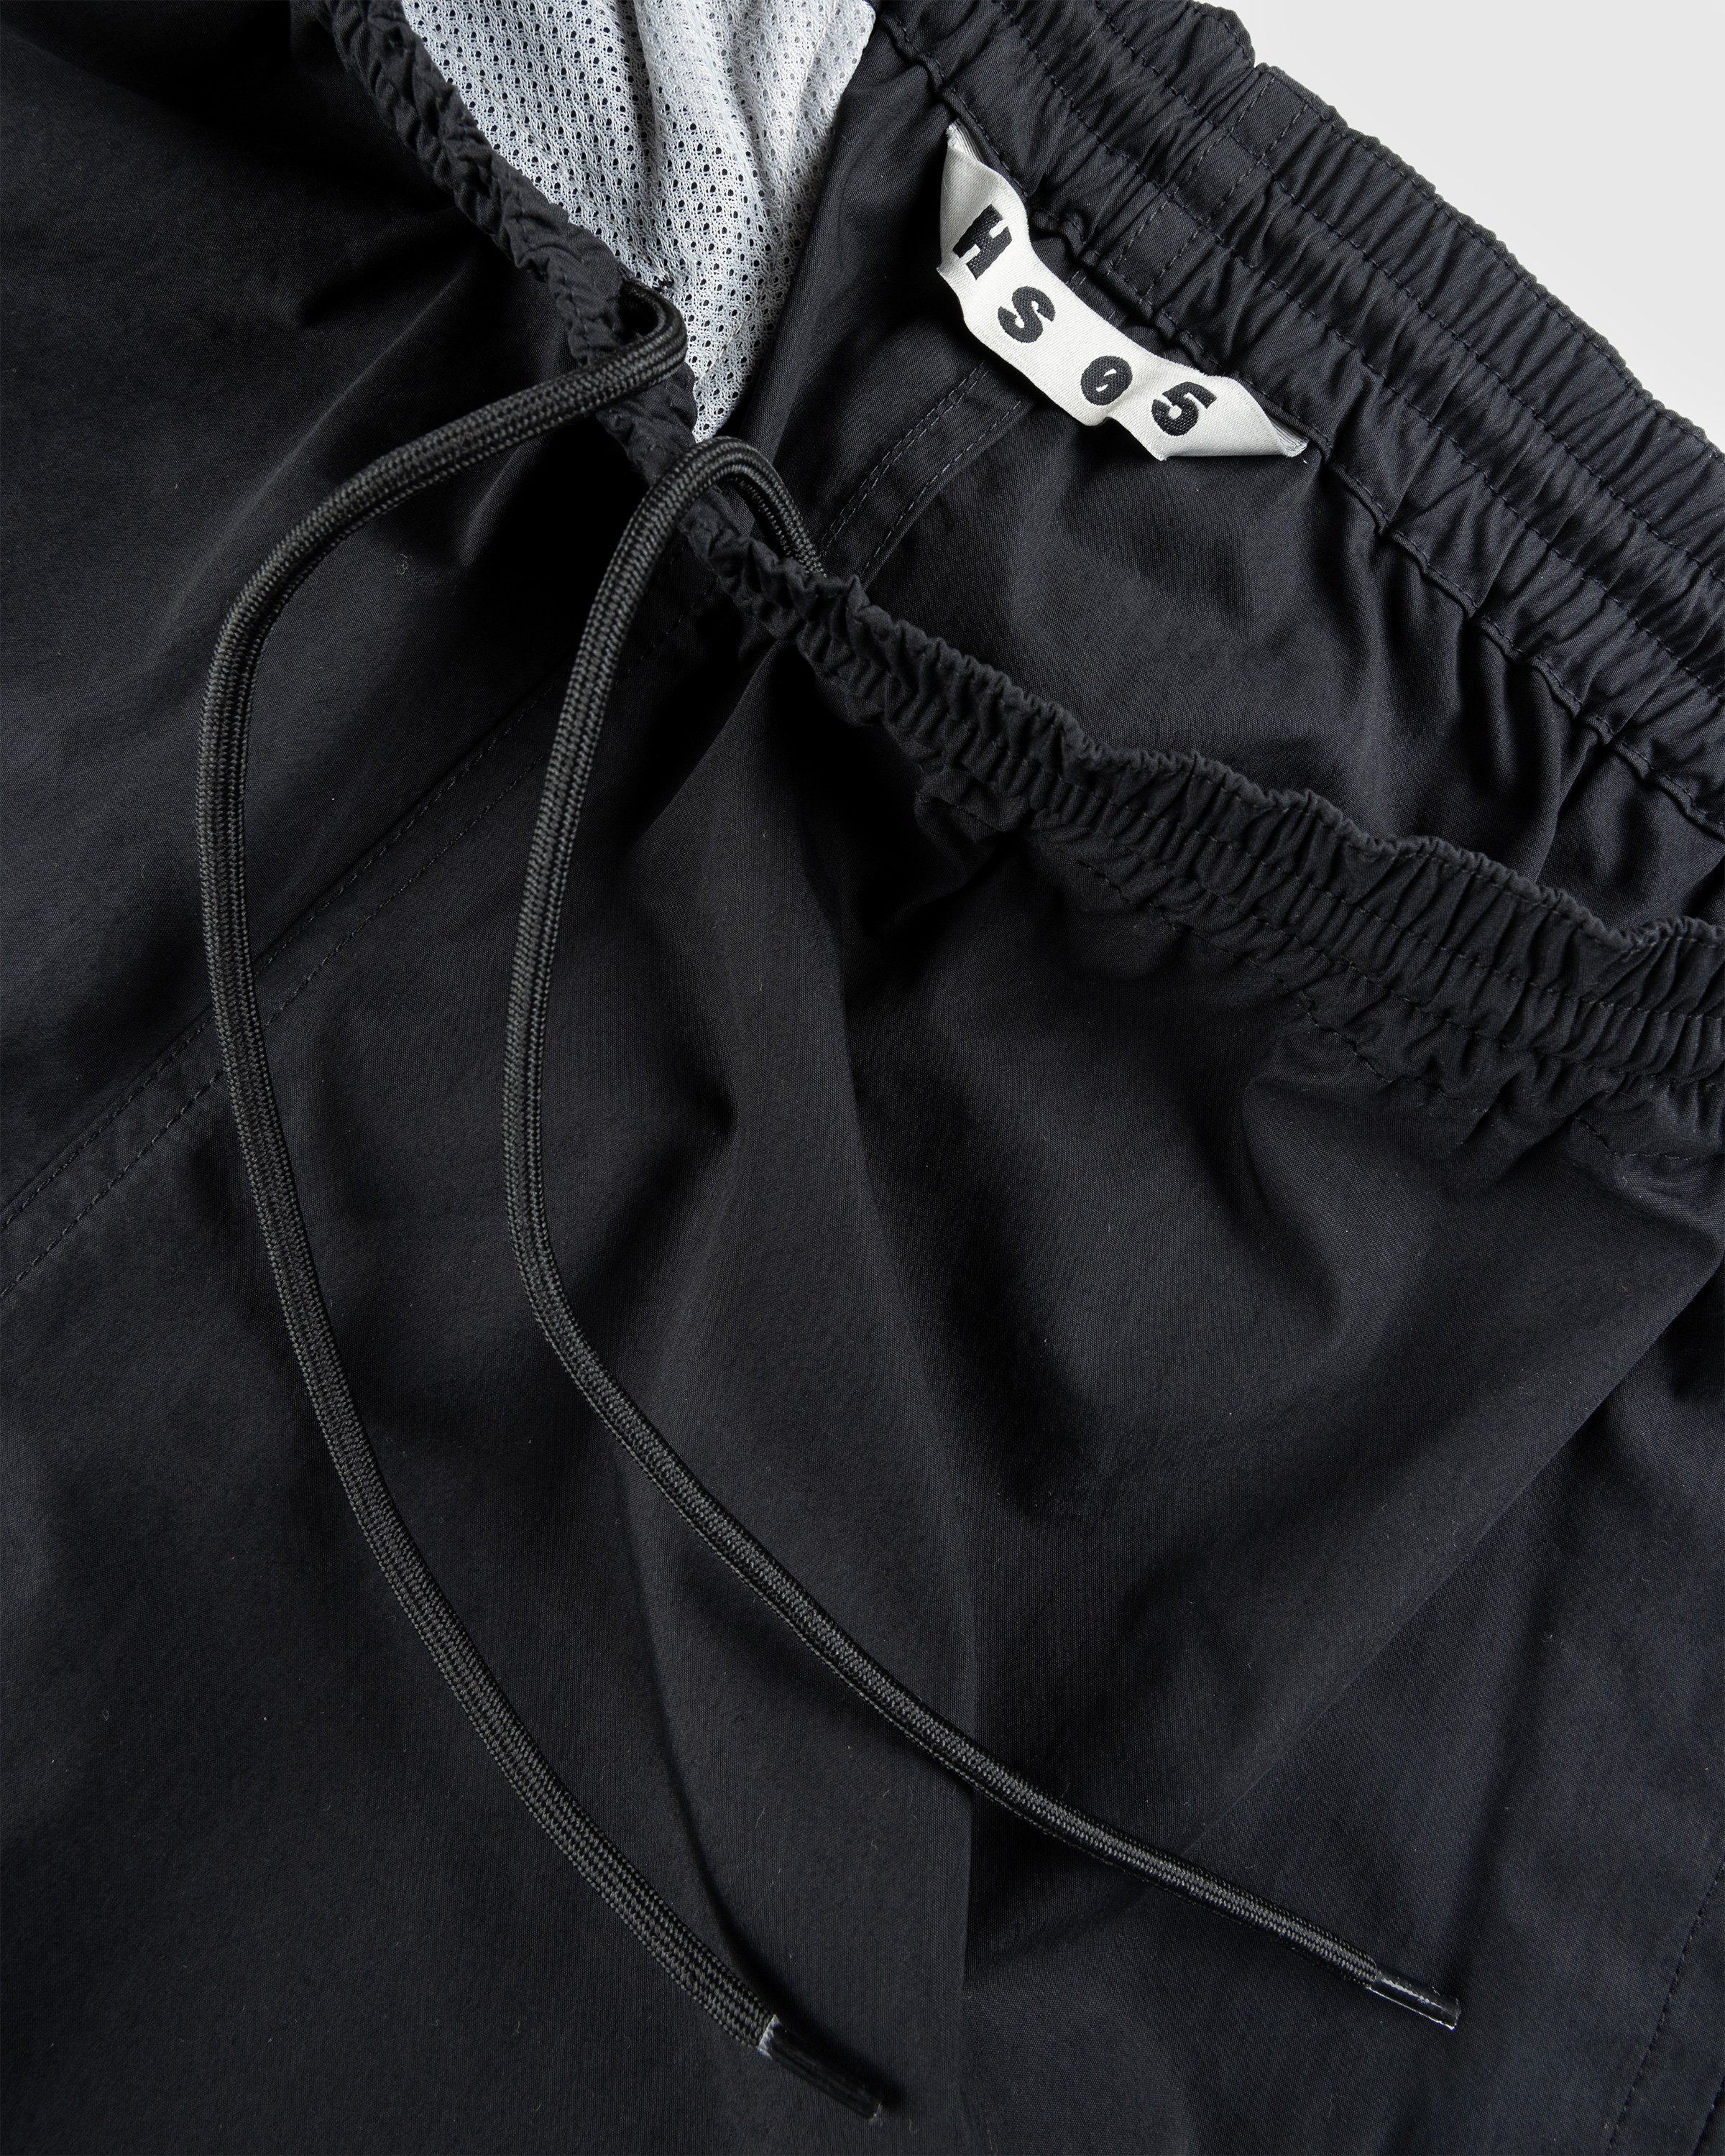 Highsnobiety HS05 - Weather Cloth Nylon Shorts Black - Clothing - Black - Image 7